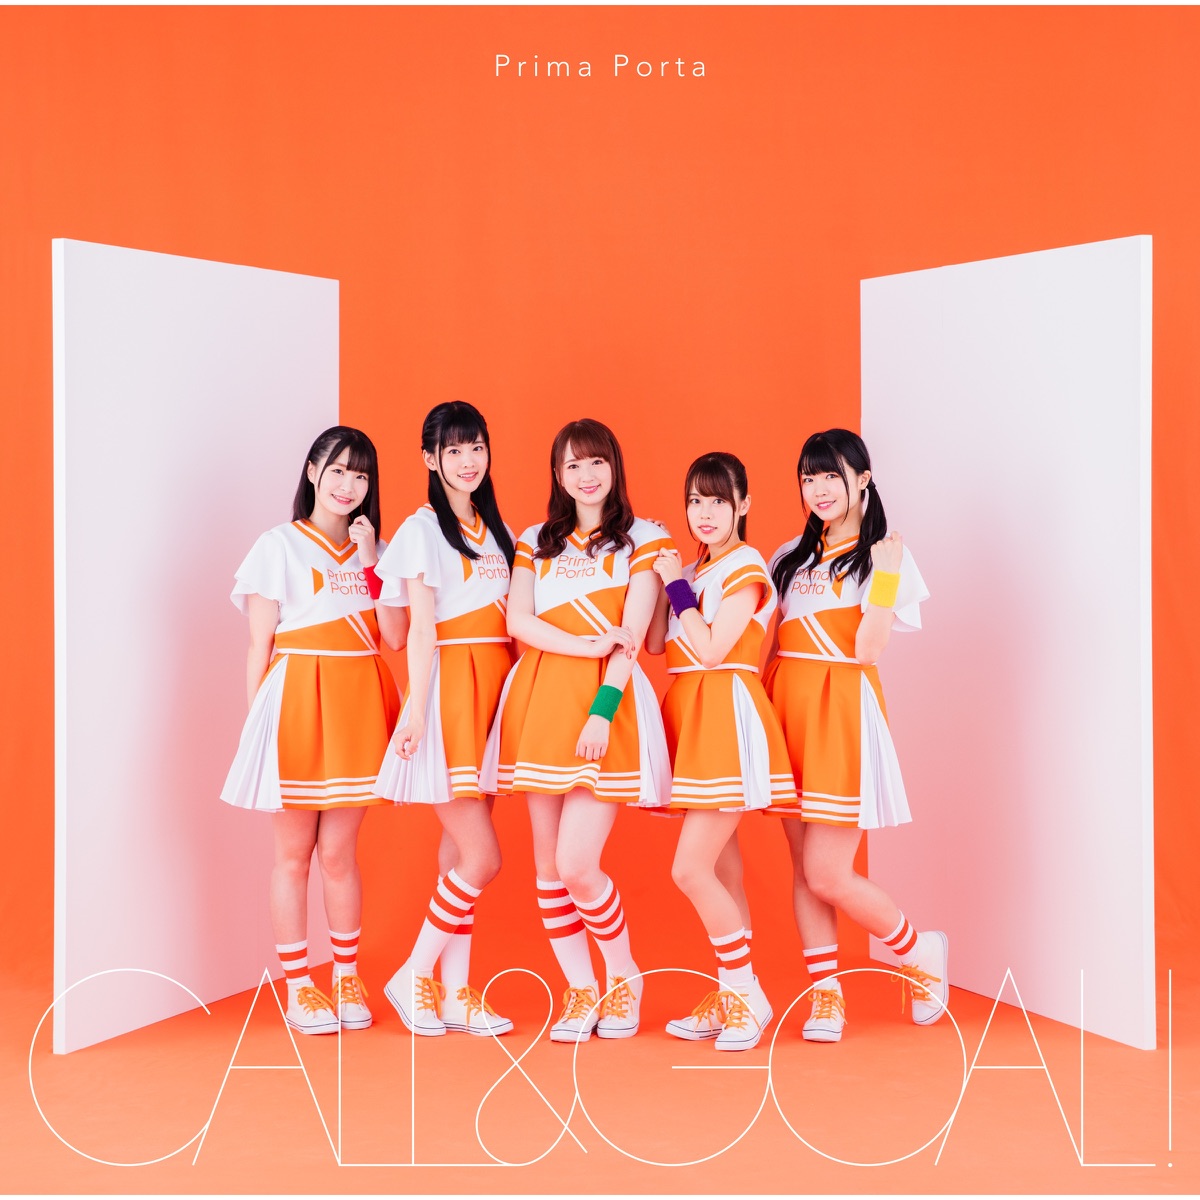 CALL&GOAL!【Prima Porta ver.】 - Single by Prima Porta on Apple Music